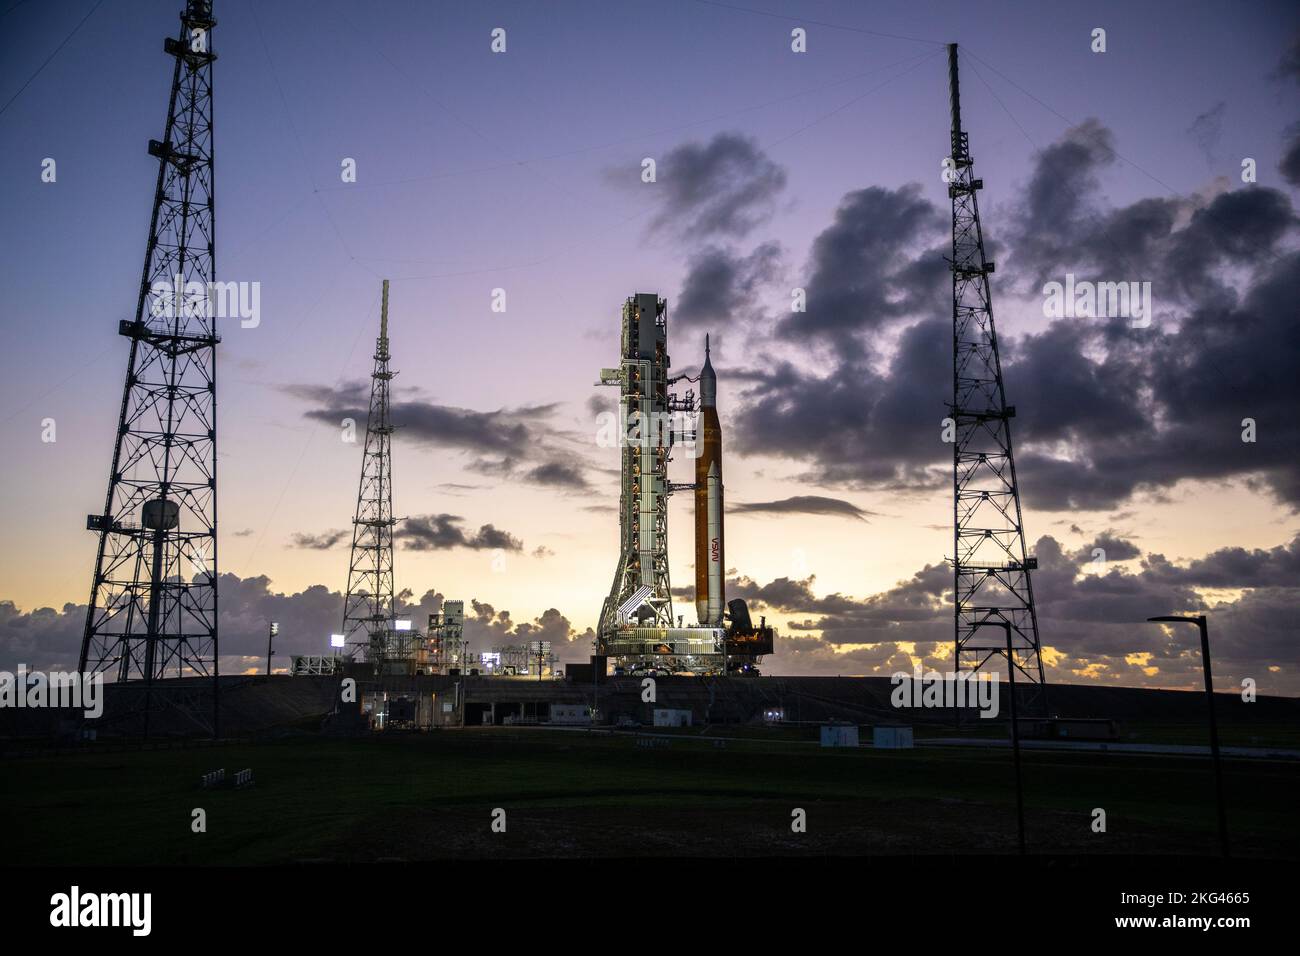 Artemis i lancio per il lancio. Il razzo Space Launch System (SLS) della NASA e la navicella spaziale Orion, in piedi in cima al lanciatore mobile, arrivano al Launch Pad 39B presso il Kennedy Space Center in Florida il 4 novembre 2022, prima del lancio di Artemis i senza equipaggio. Artemis i sarà il primo test integrato del razzo SLS e della navicella spaziale Orion della NASA e sarà lanciato lunedì 14 novembre. L'obiettivo primario di Artemis i è testare a fondo i sistemi integrati prima delle missioni con equipaggio lanciando Orion in cima al razzo SLS, azionando la navicella spaziale in un ambiente spaziale profondo, testando il calore di Orion Foto Stock